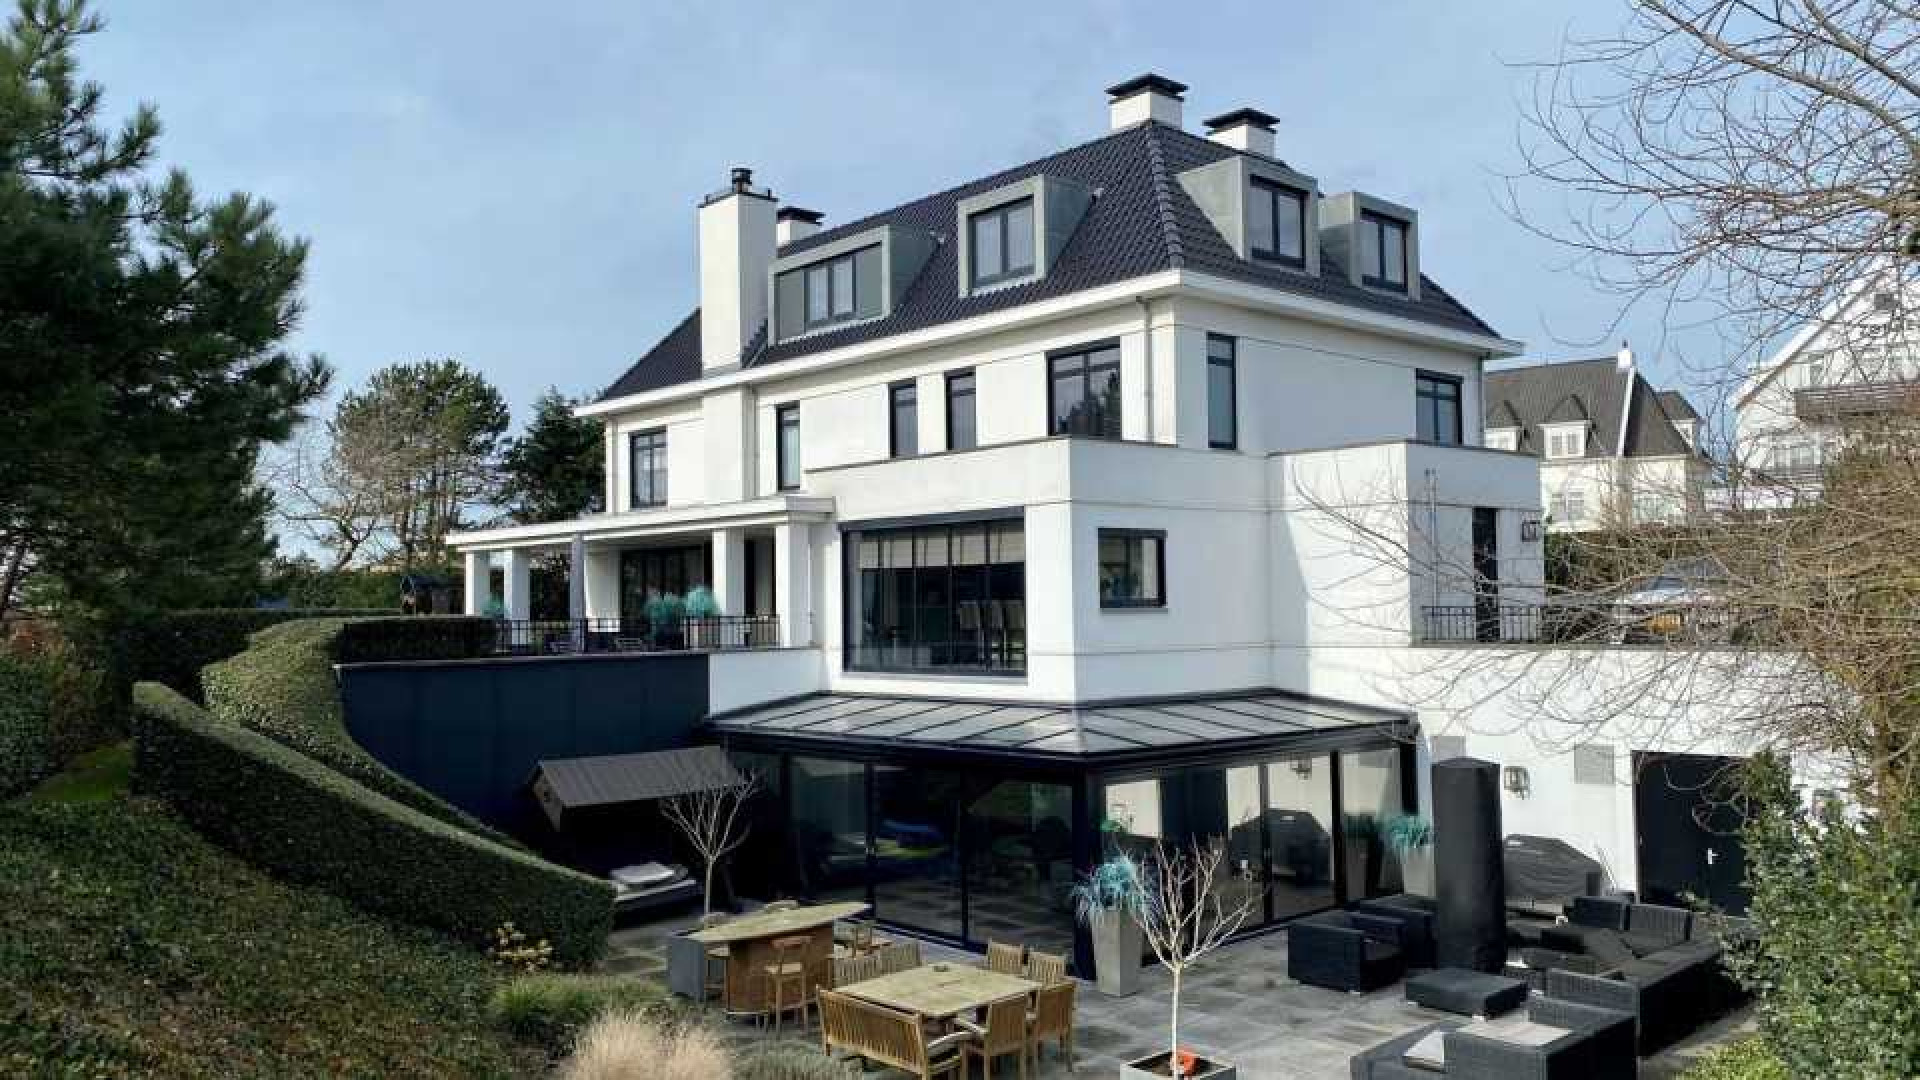 Verkoop villa gaat Dirk Kuijt miljoenen euro's kosten Zie foto's 2